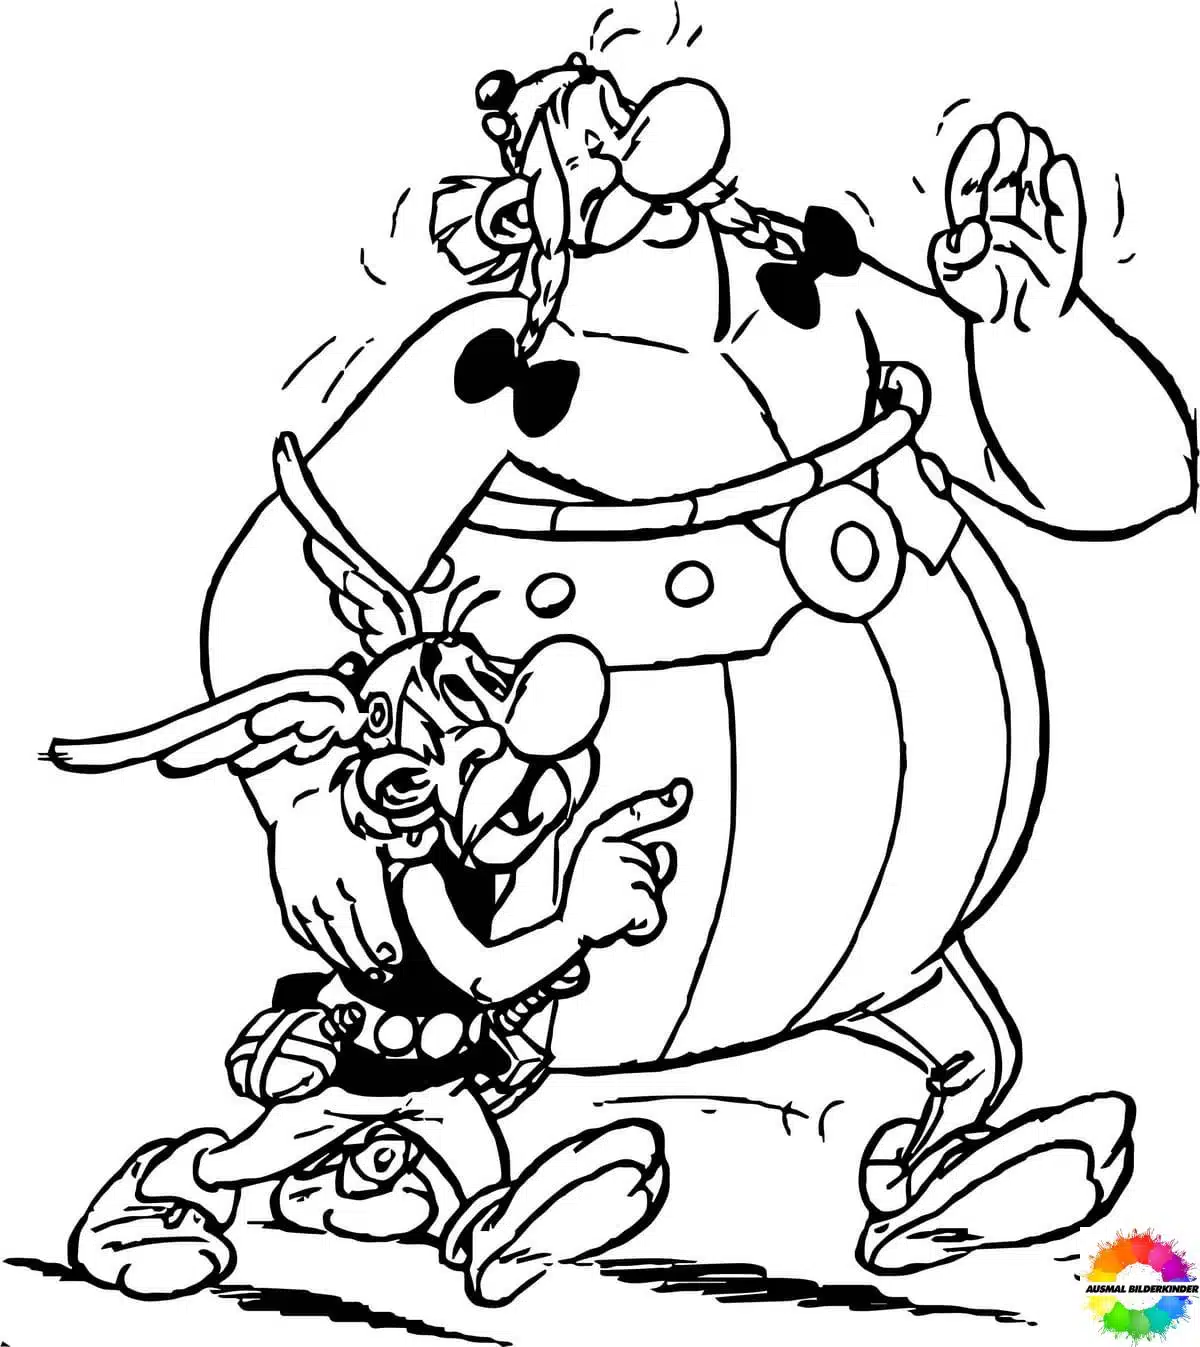 Asterix and Obelix 16